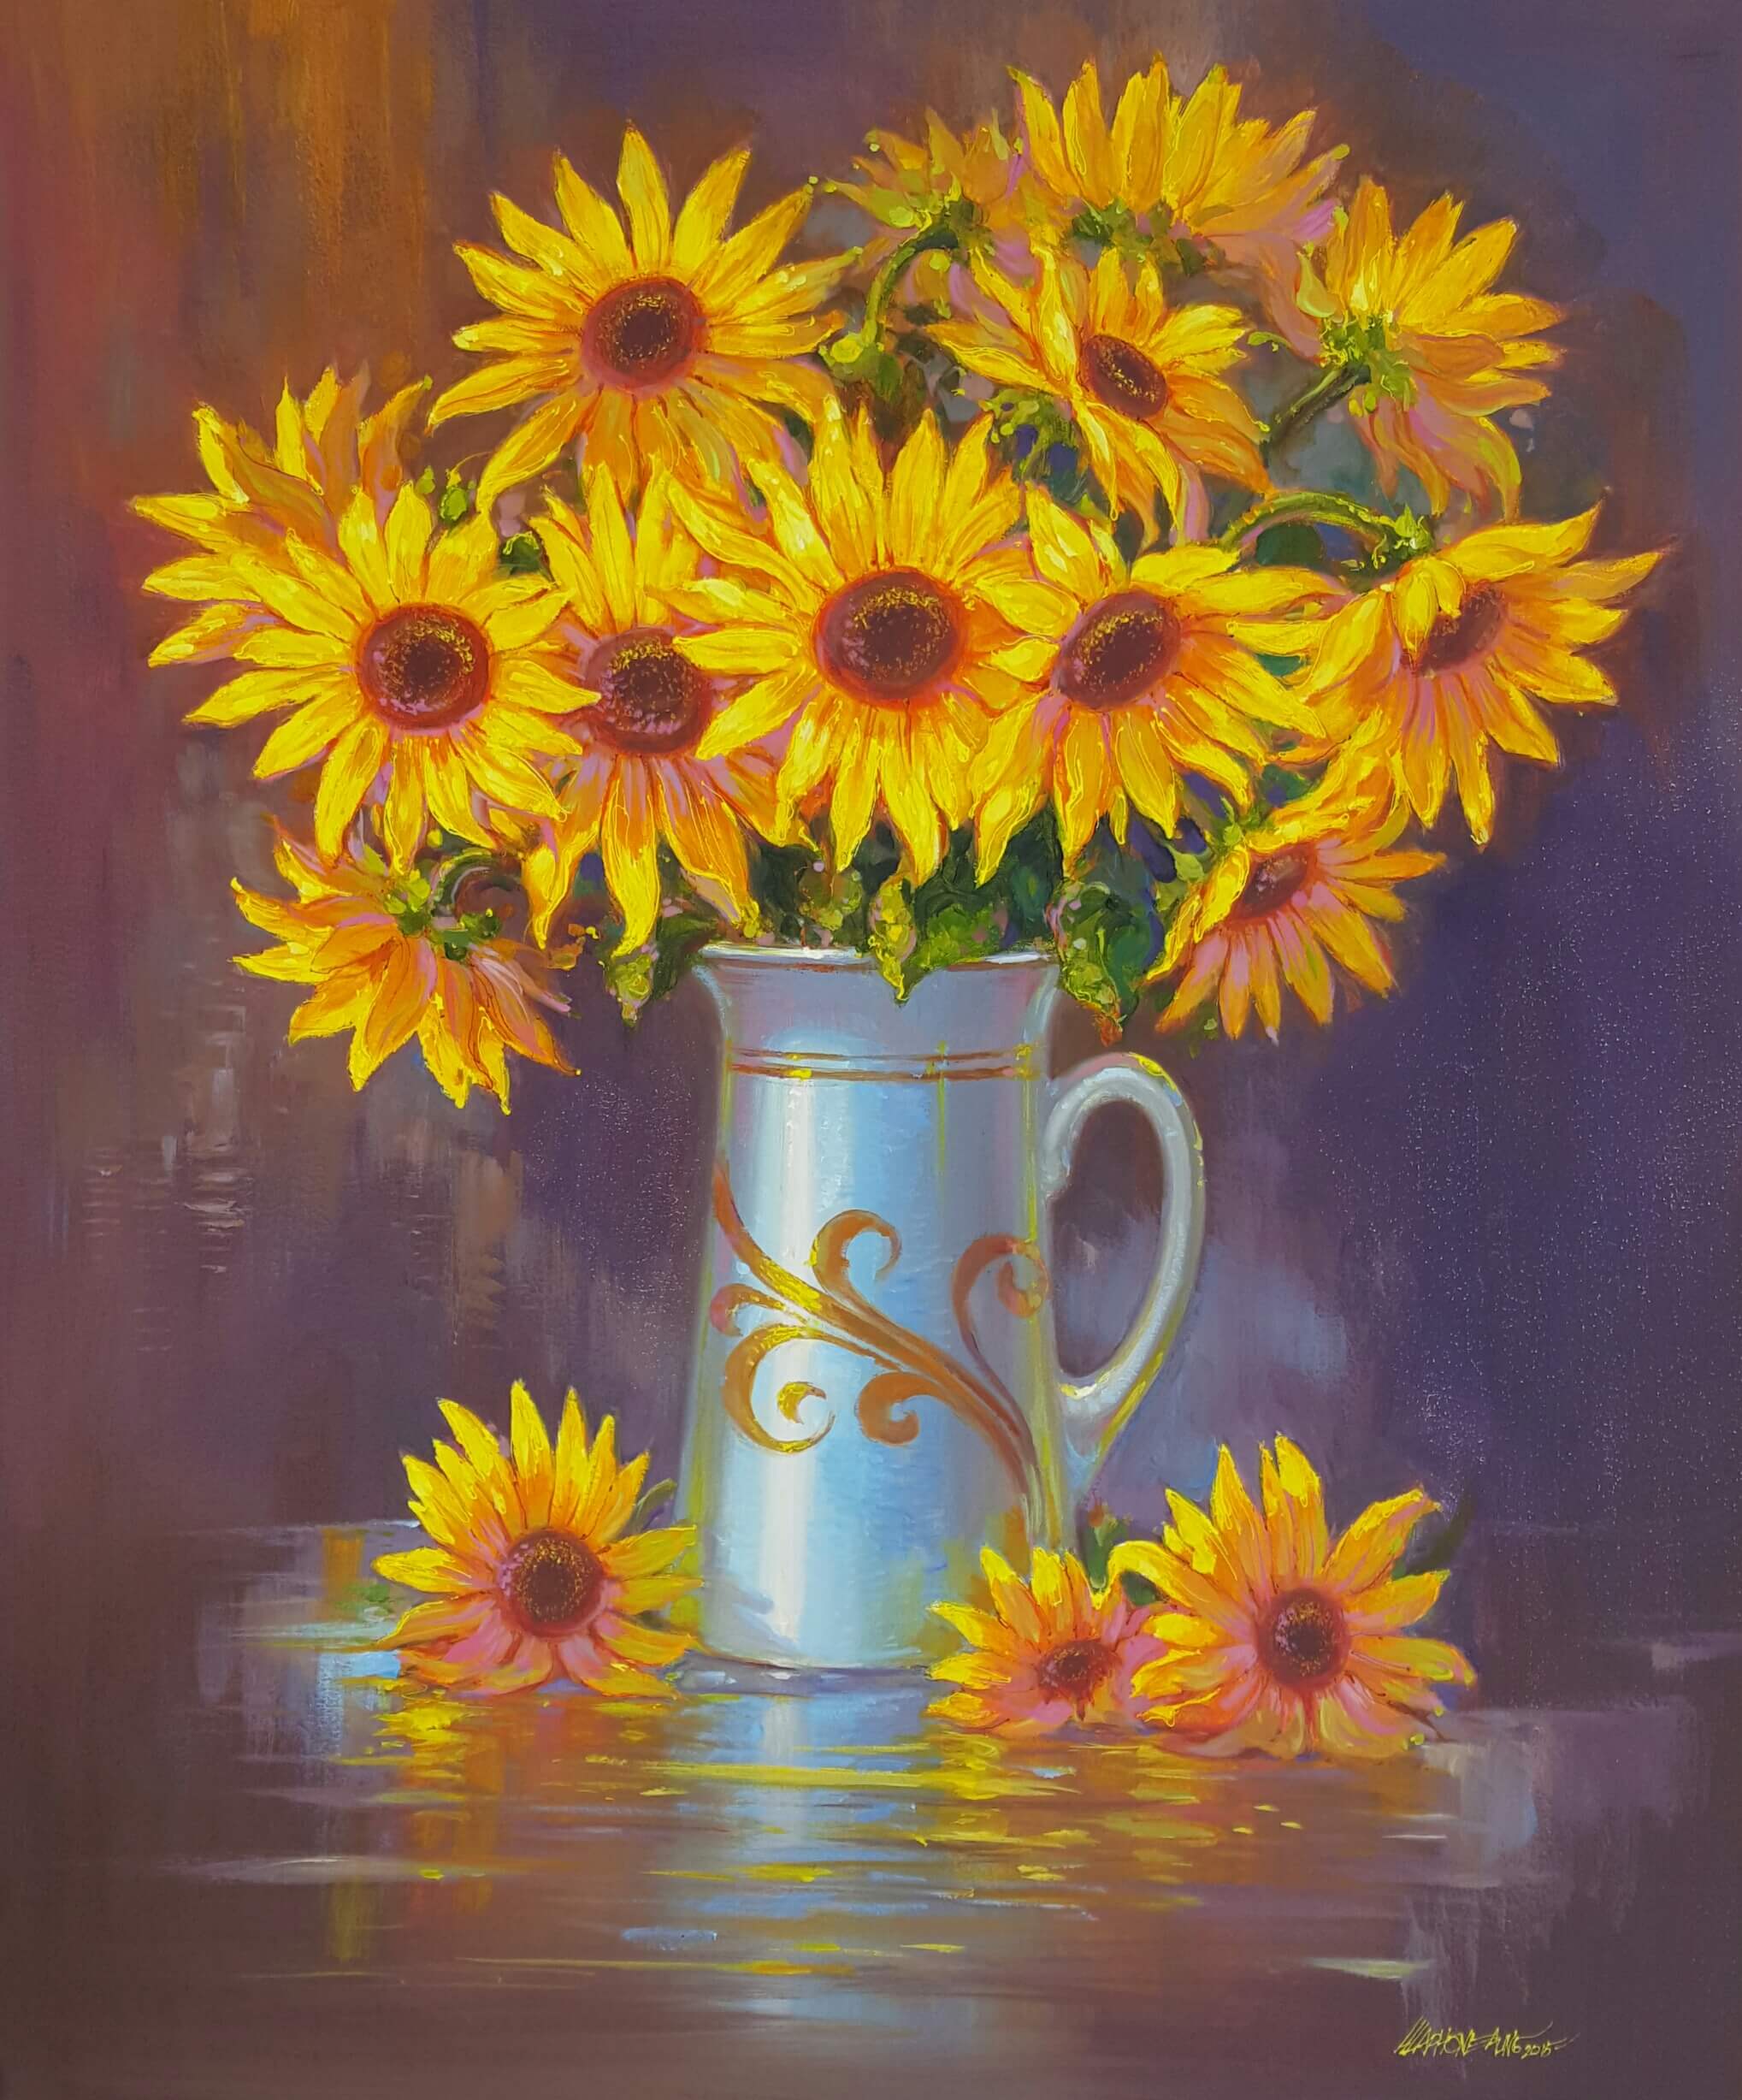 Hla-Phone-Aung-Sunflower-(1)-2015-30x36-Acrylic